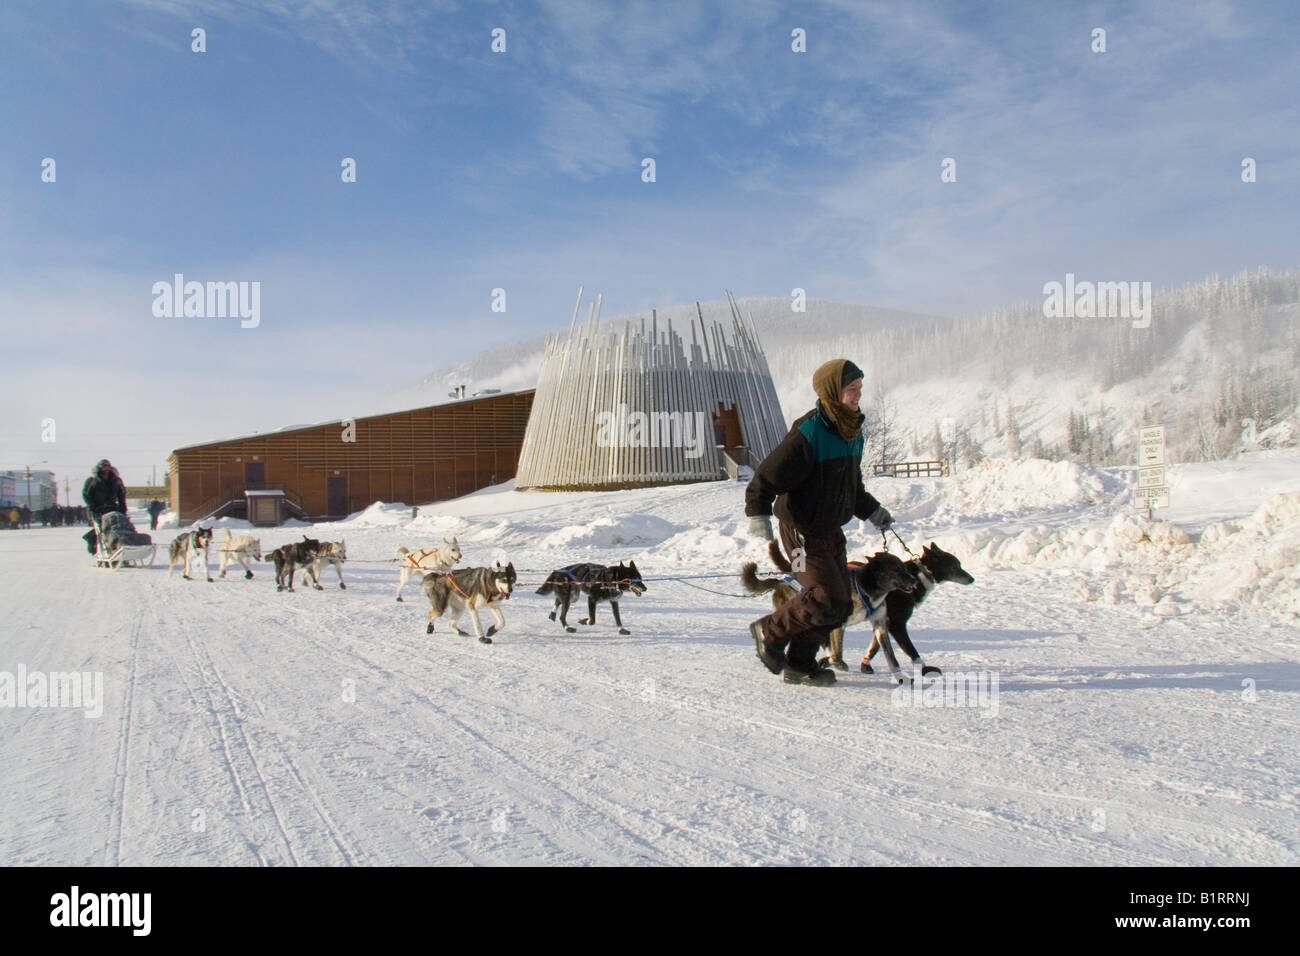 Yukon Quest Schlittenhunderennen, Hausmeister Führung Hund Team, Dawson City, Yukon Territorium, Kanada, Nordamerika Stockfoto